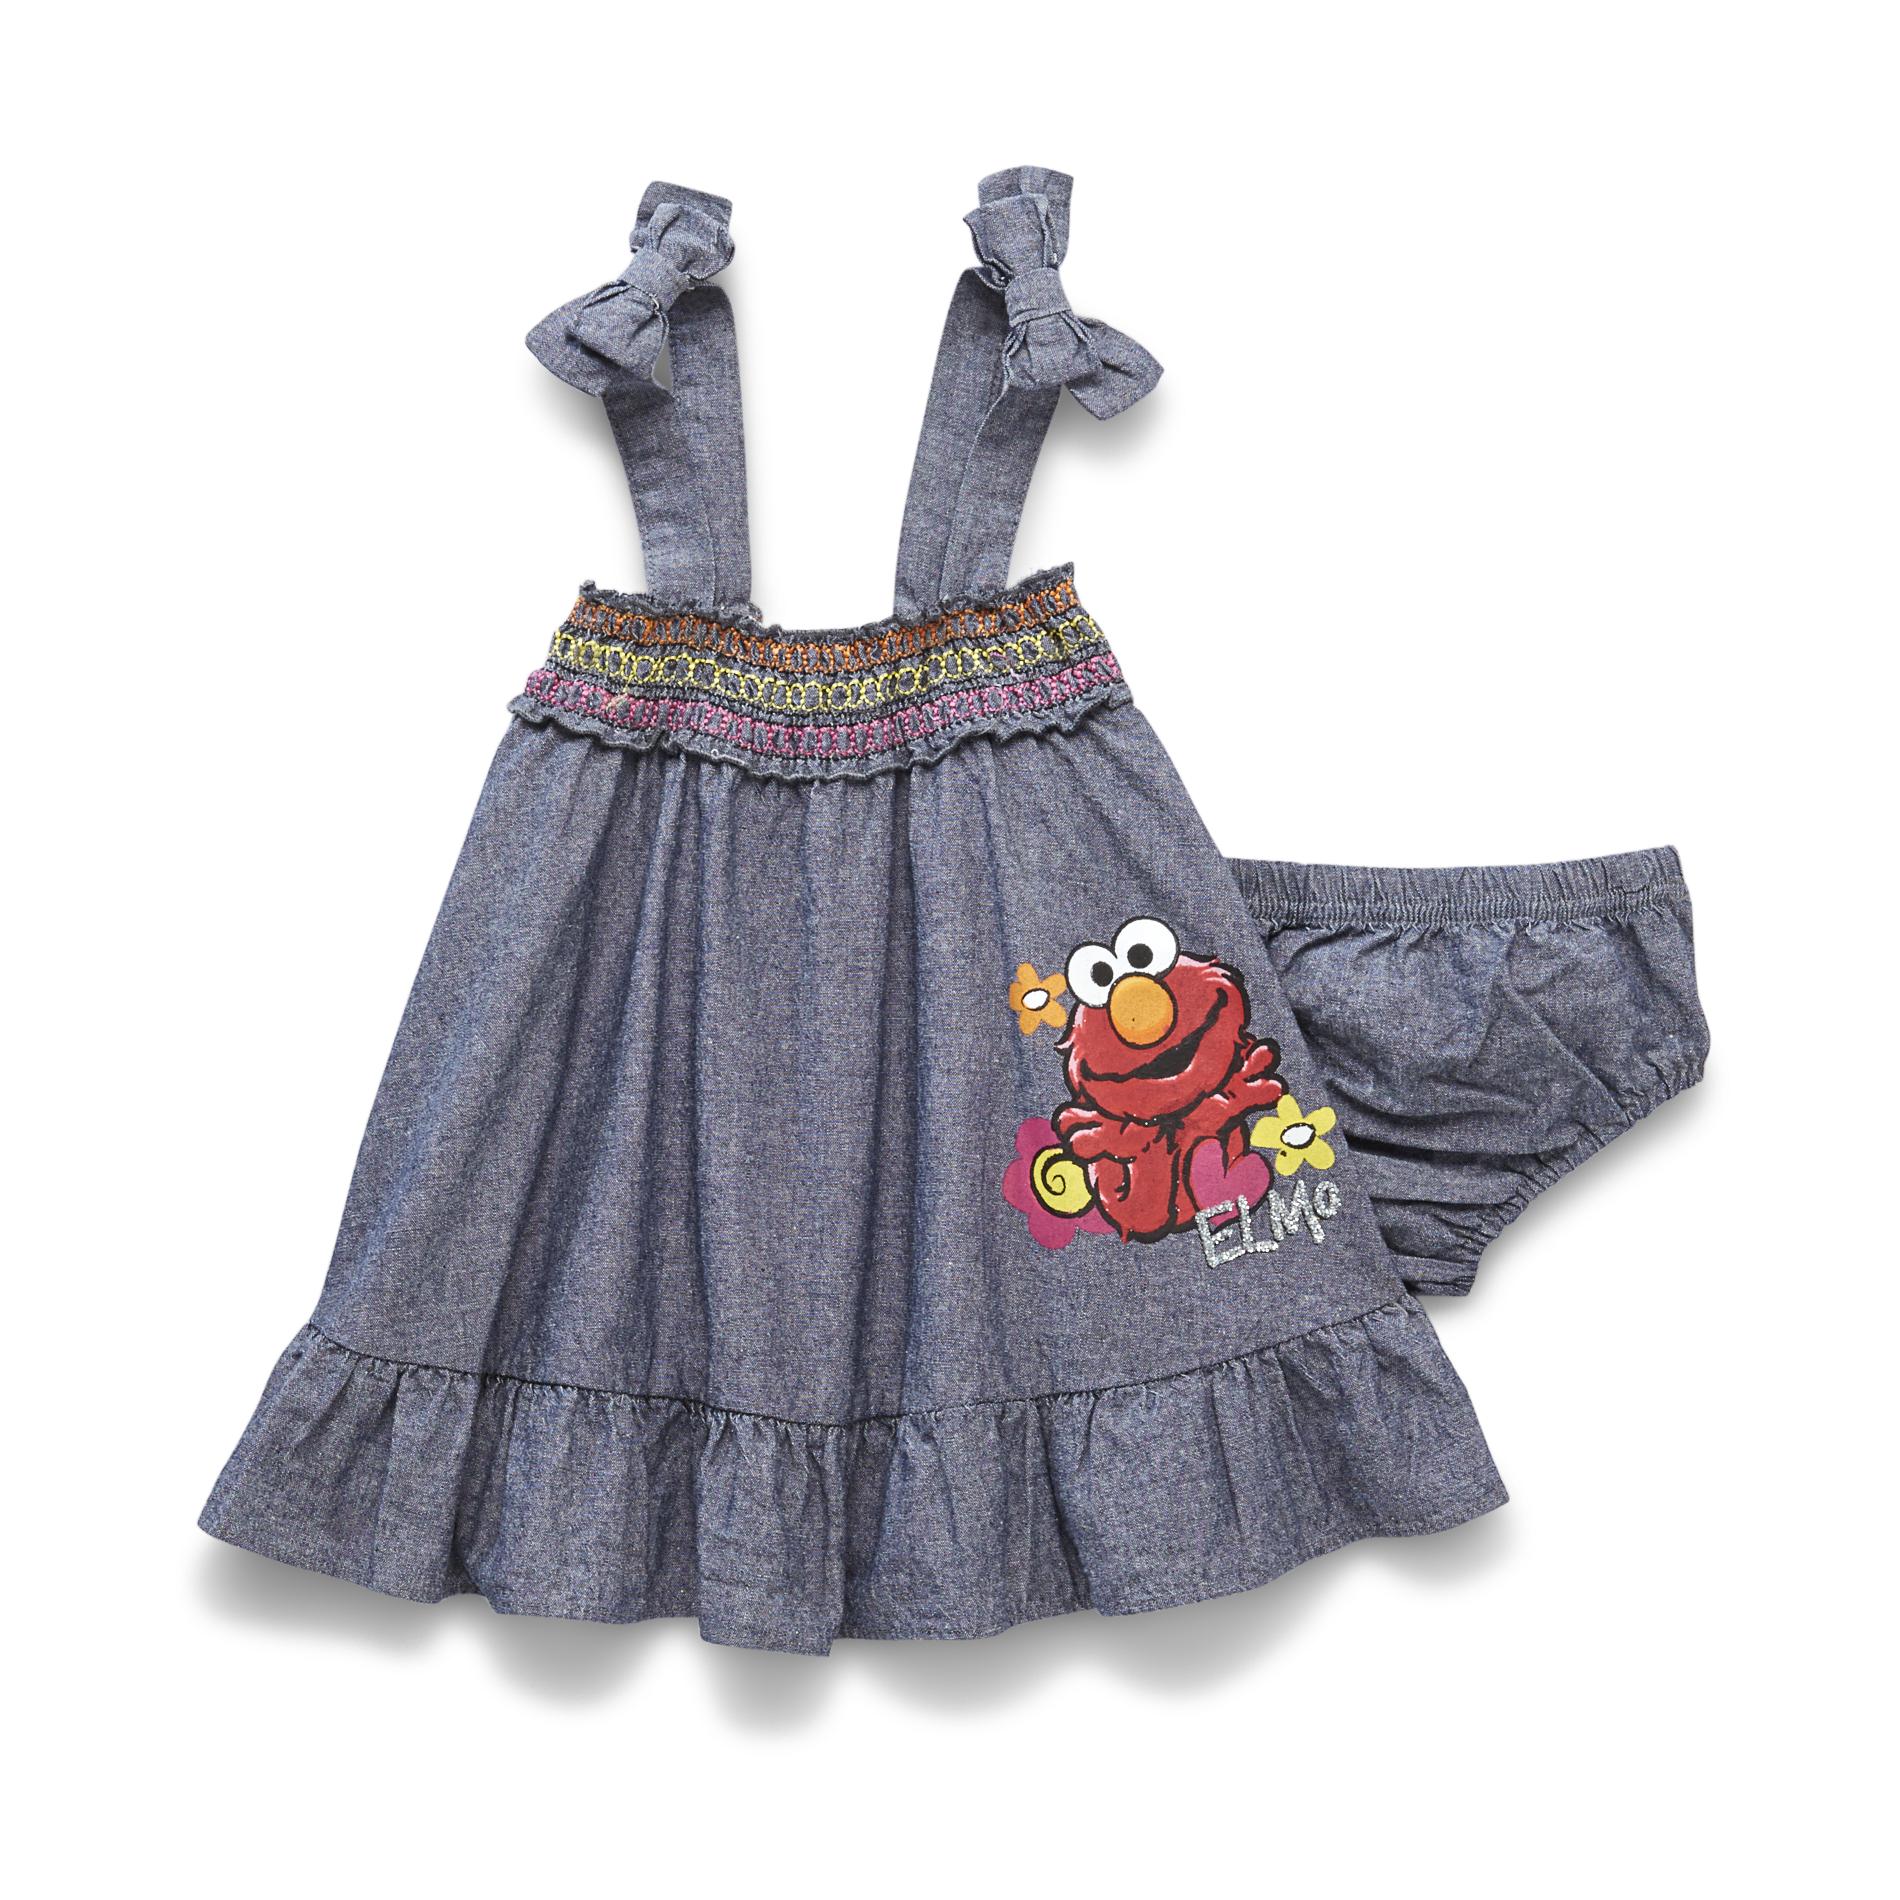 Sesame Street Infant Girl's Smocked Sundress - Elmo